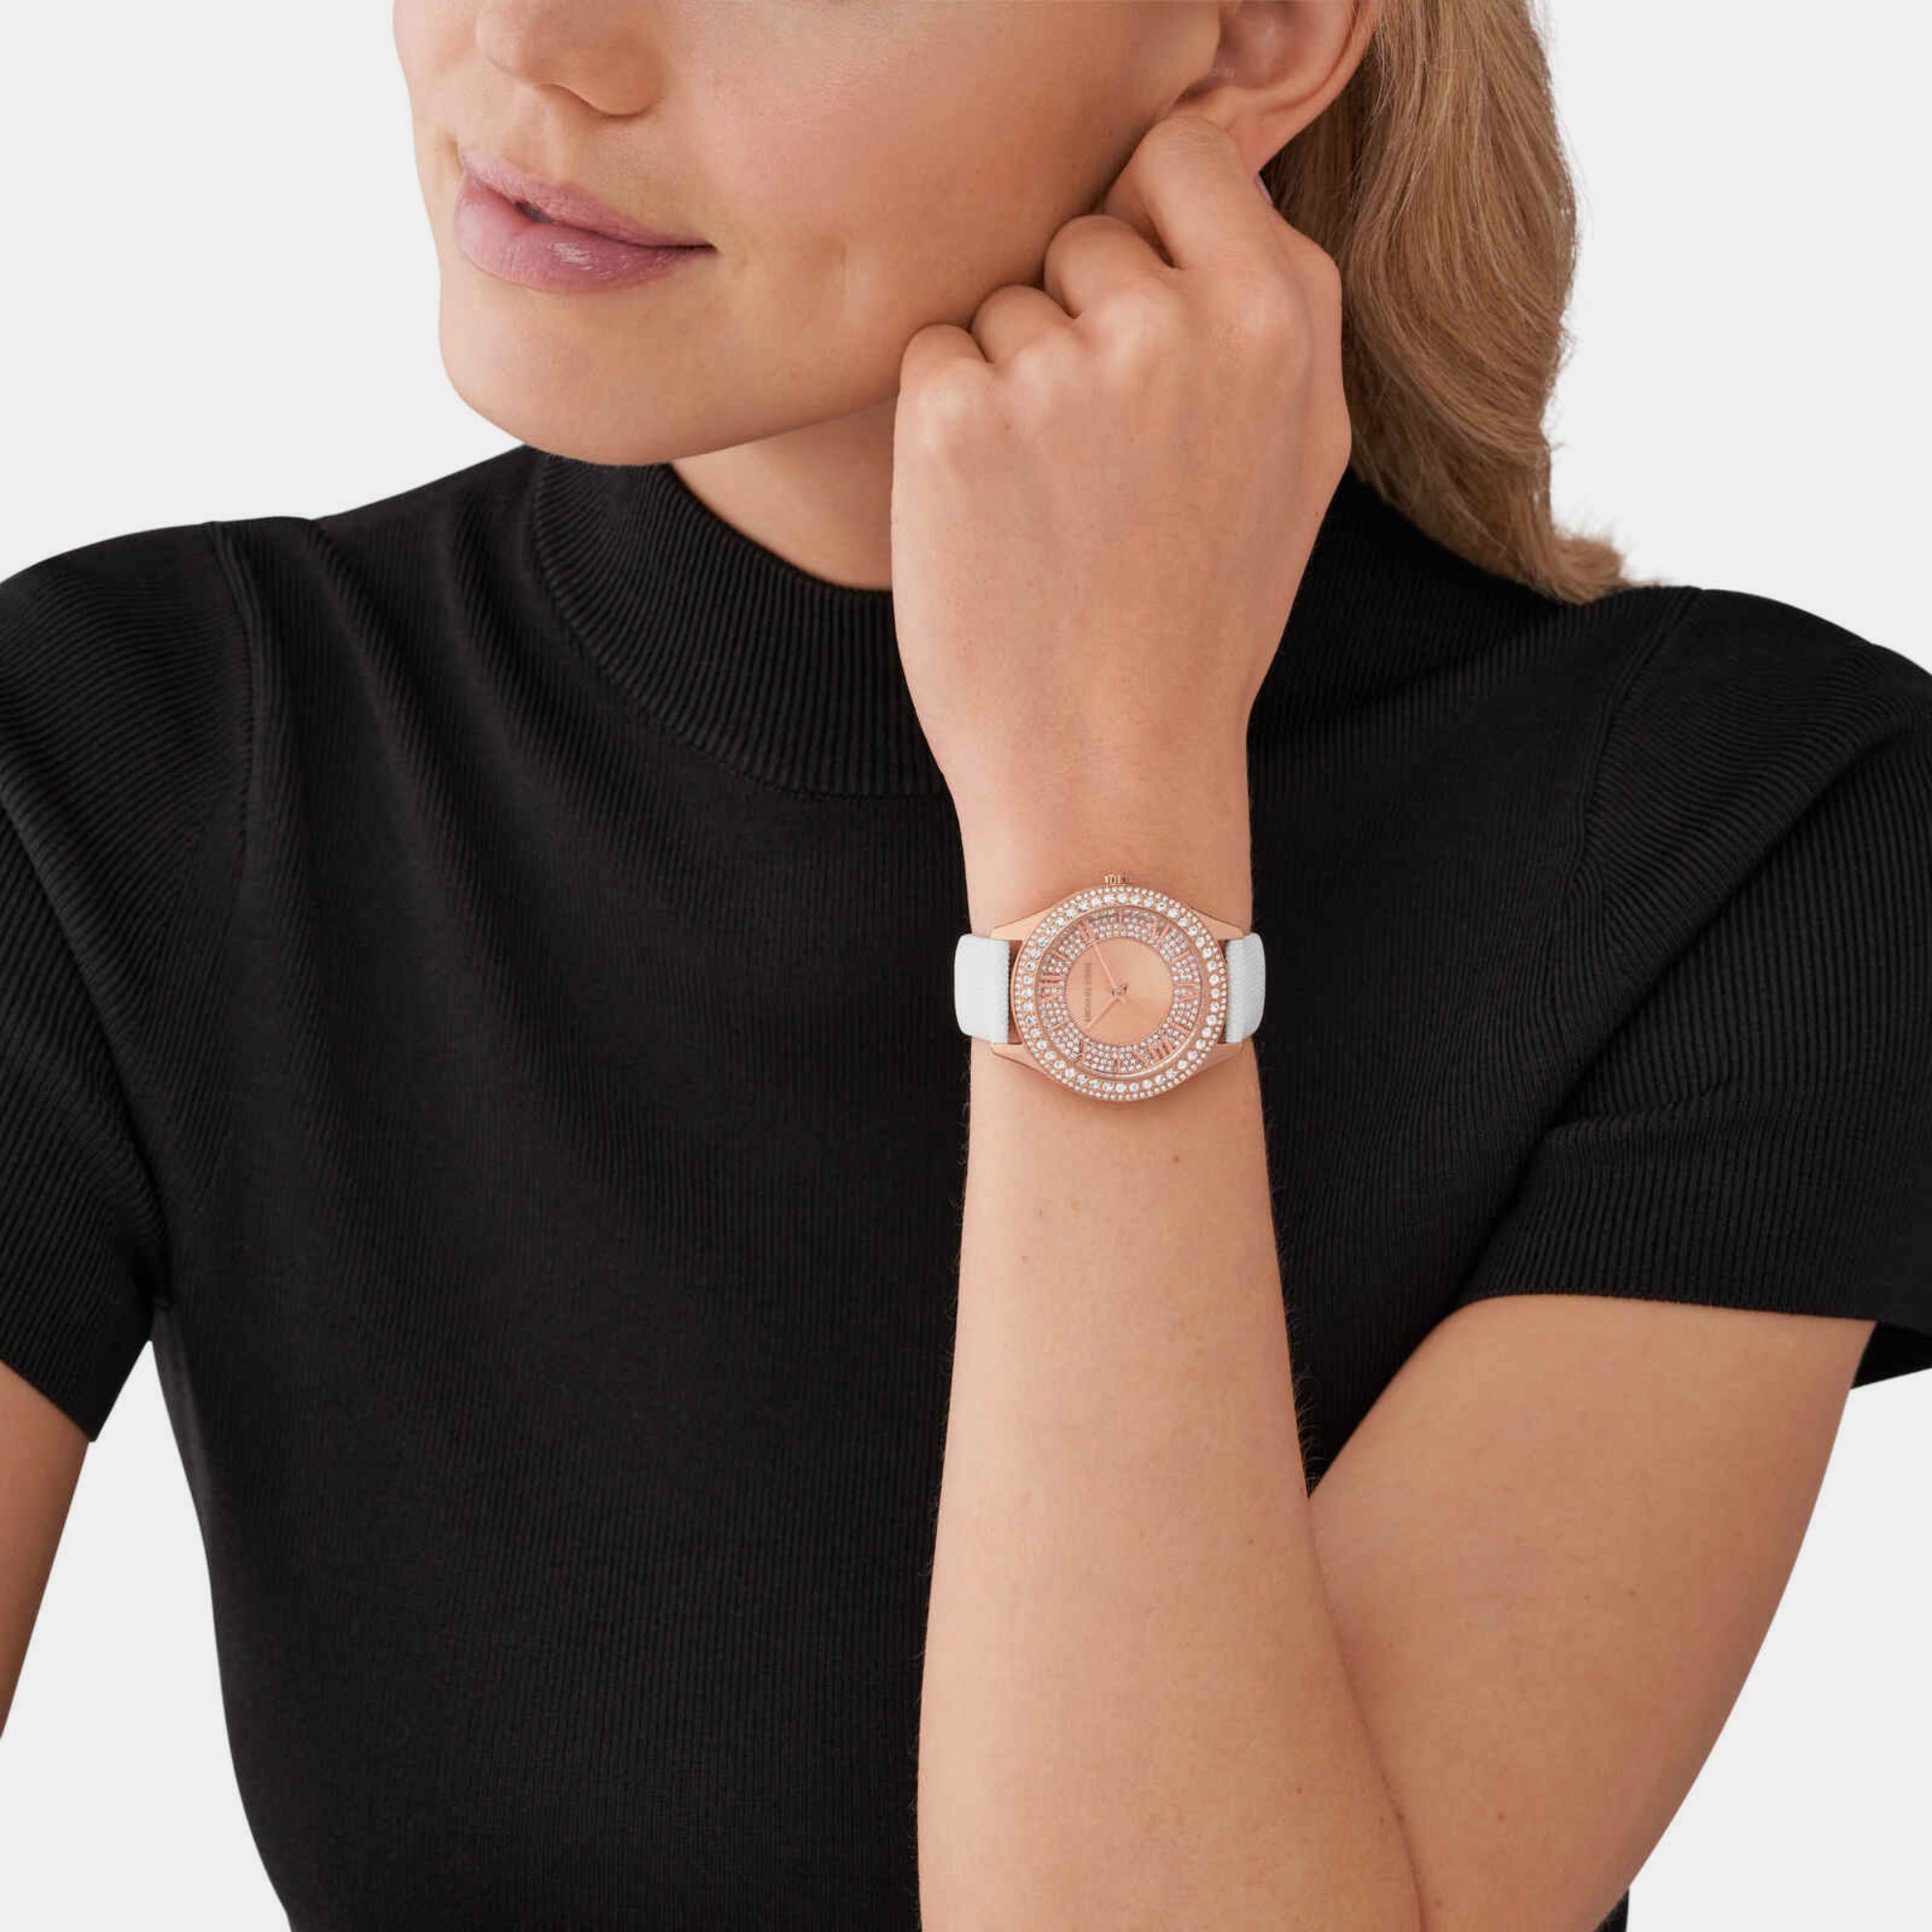 Swarovski Watches | W Hamond Luxury Watches